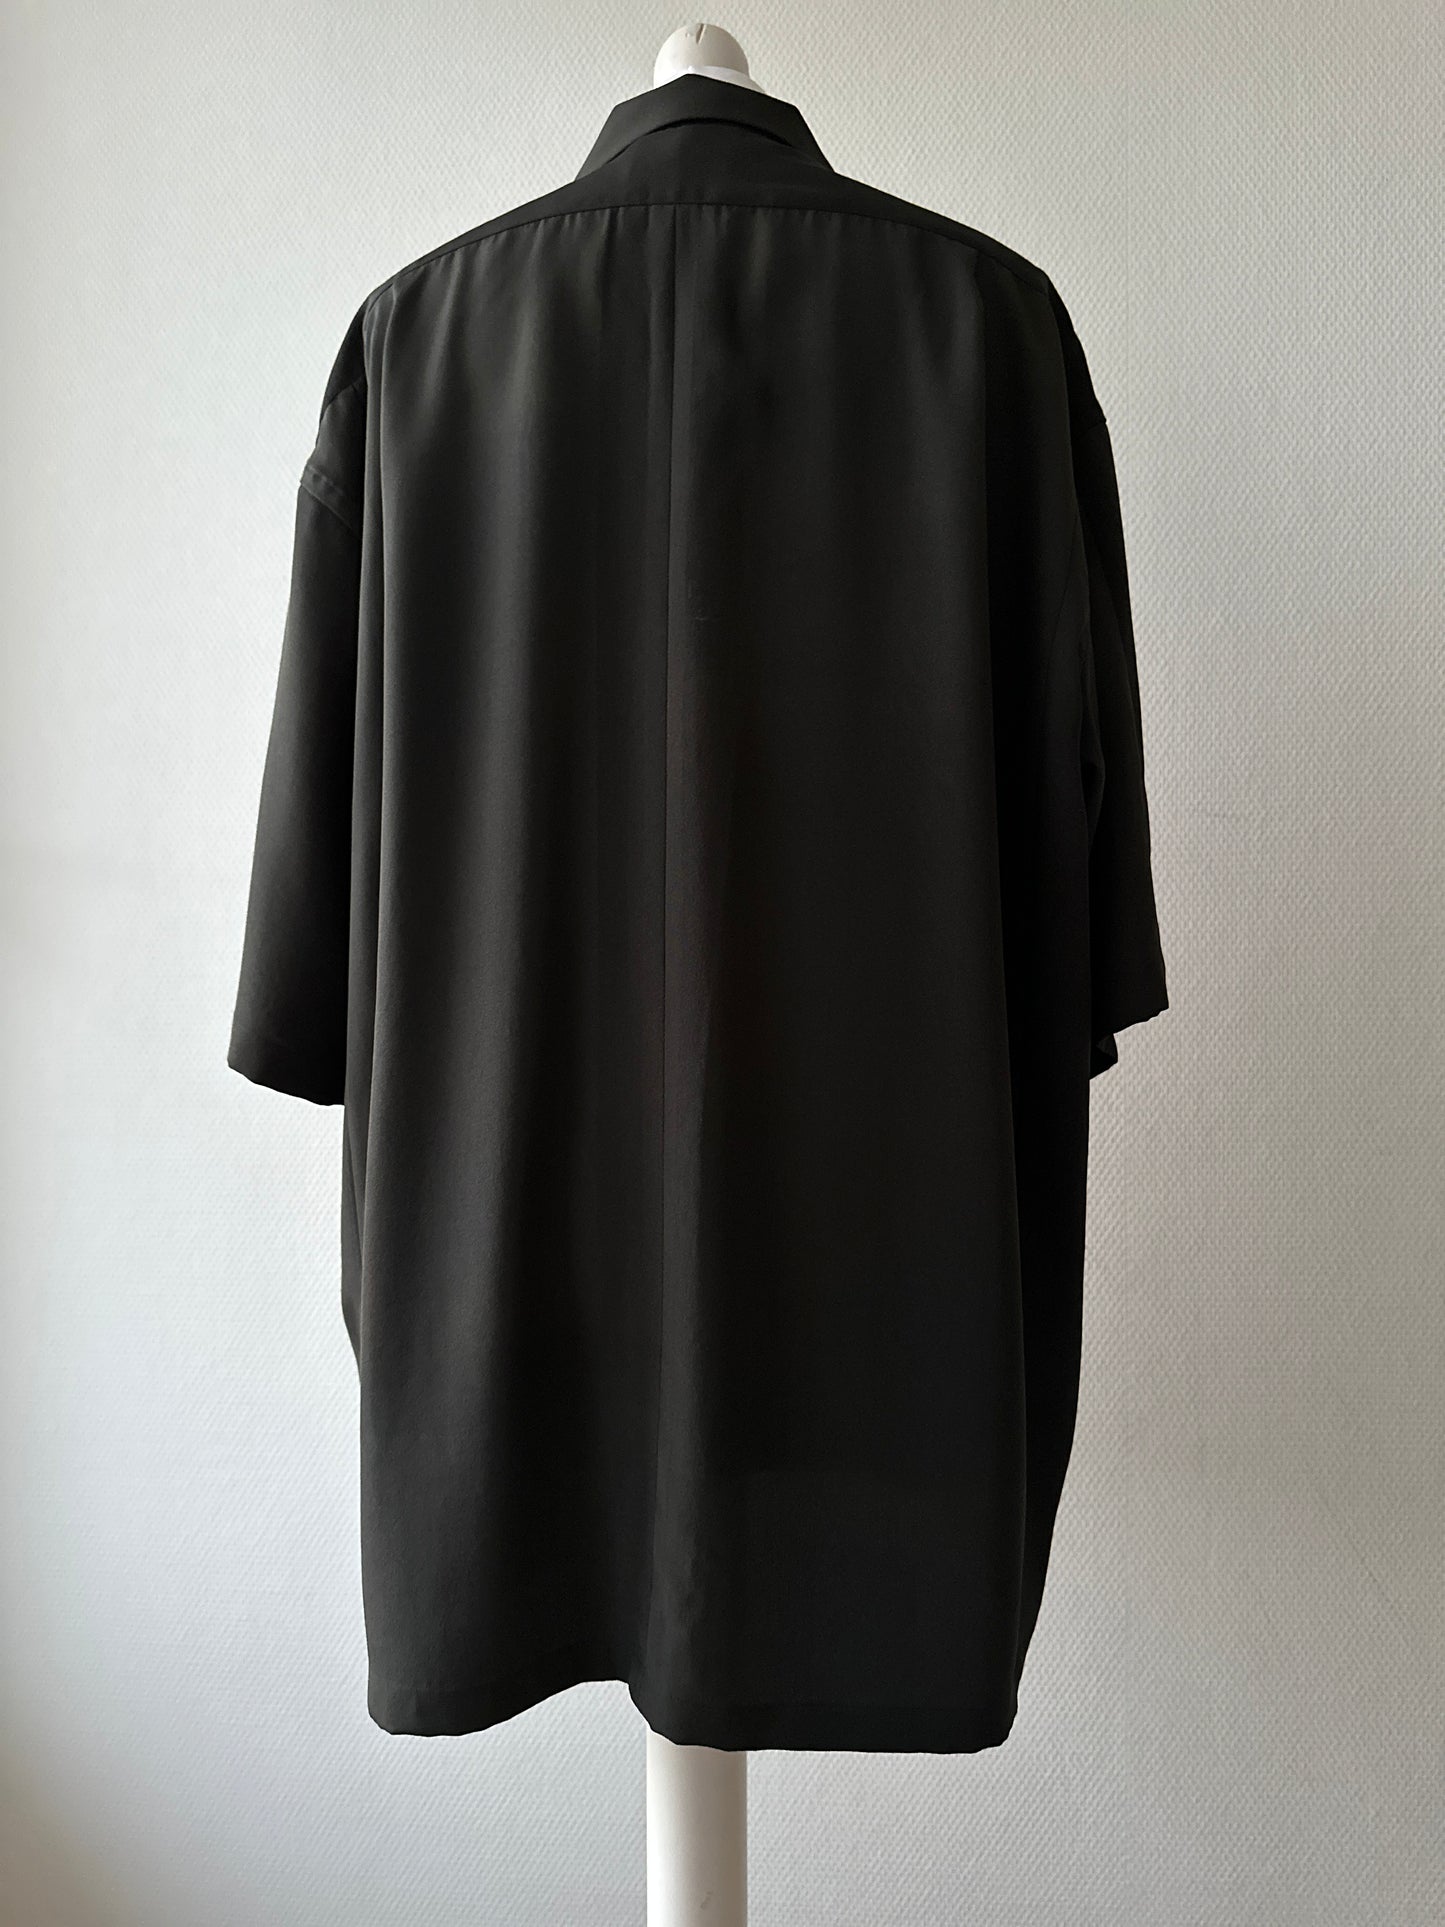 【Black and Gold, Kissho】 chemise hawaïenne / taille: 3L ＜ Nouveau ・ Silk ＞ pour les hommes, pour les femmes, le kimono japonais, les vêtements unisexais du Japon, l'unisexe, les cadeaux japonais, l'article original